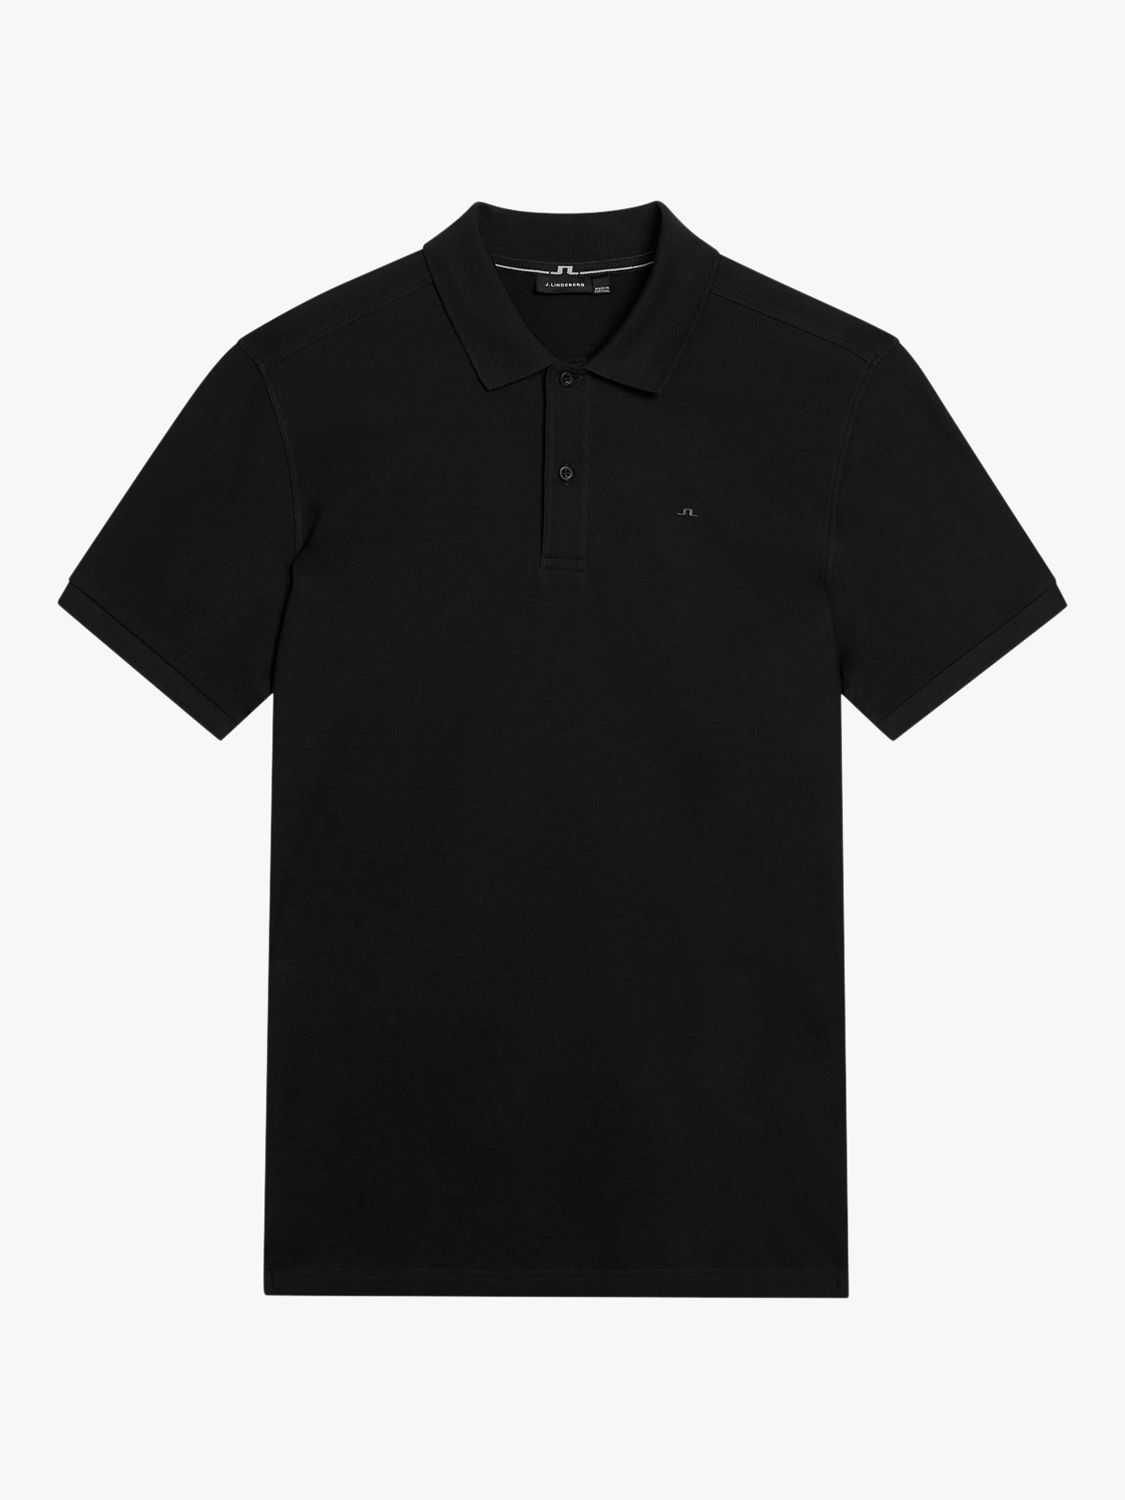 J.Lindeberg Pique Polo Shirt, Black, S